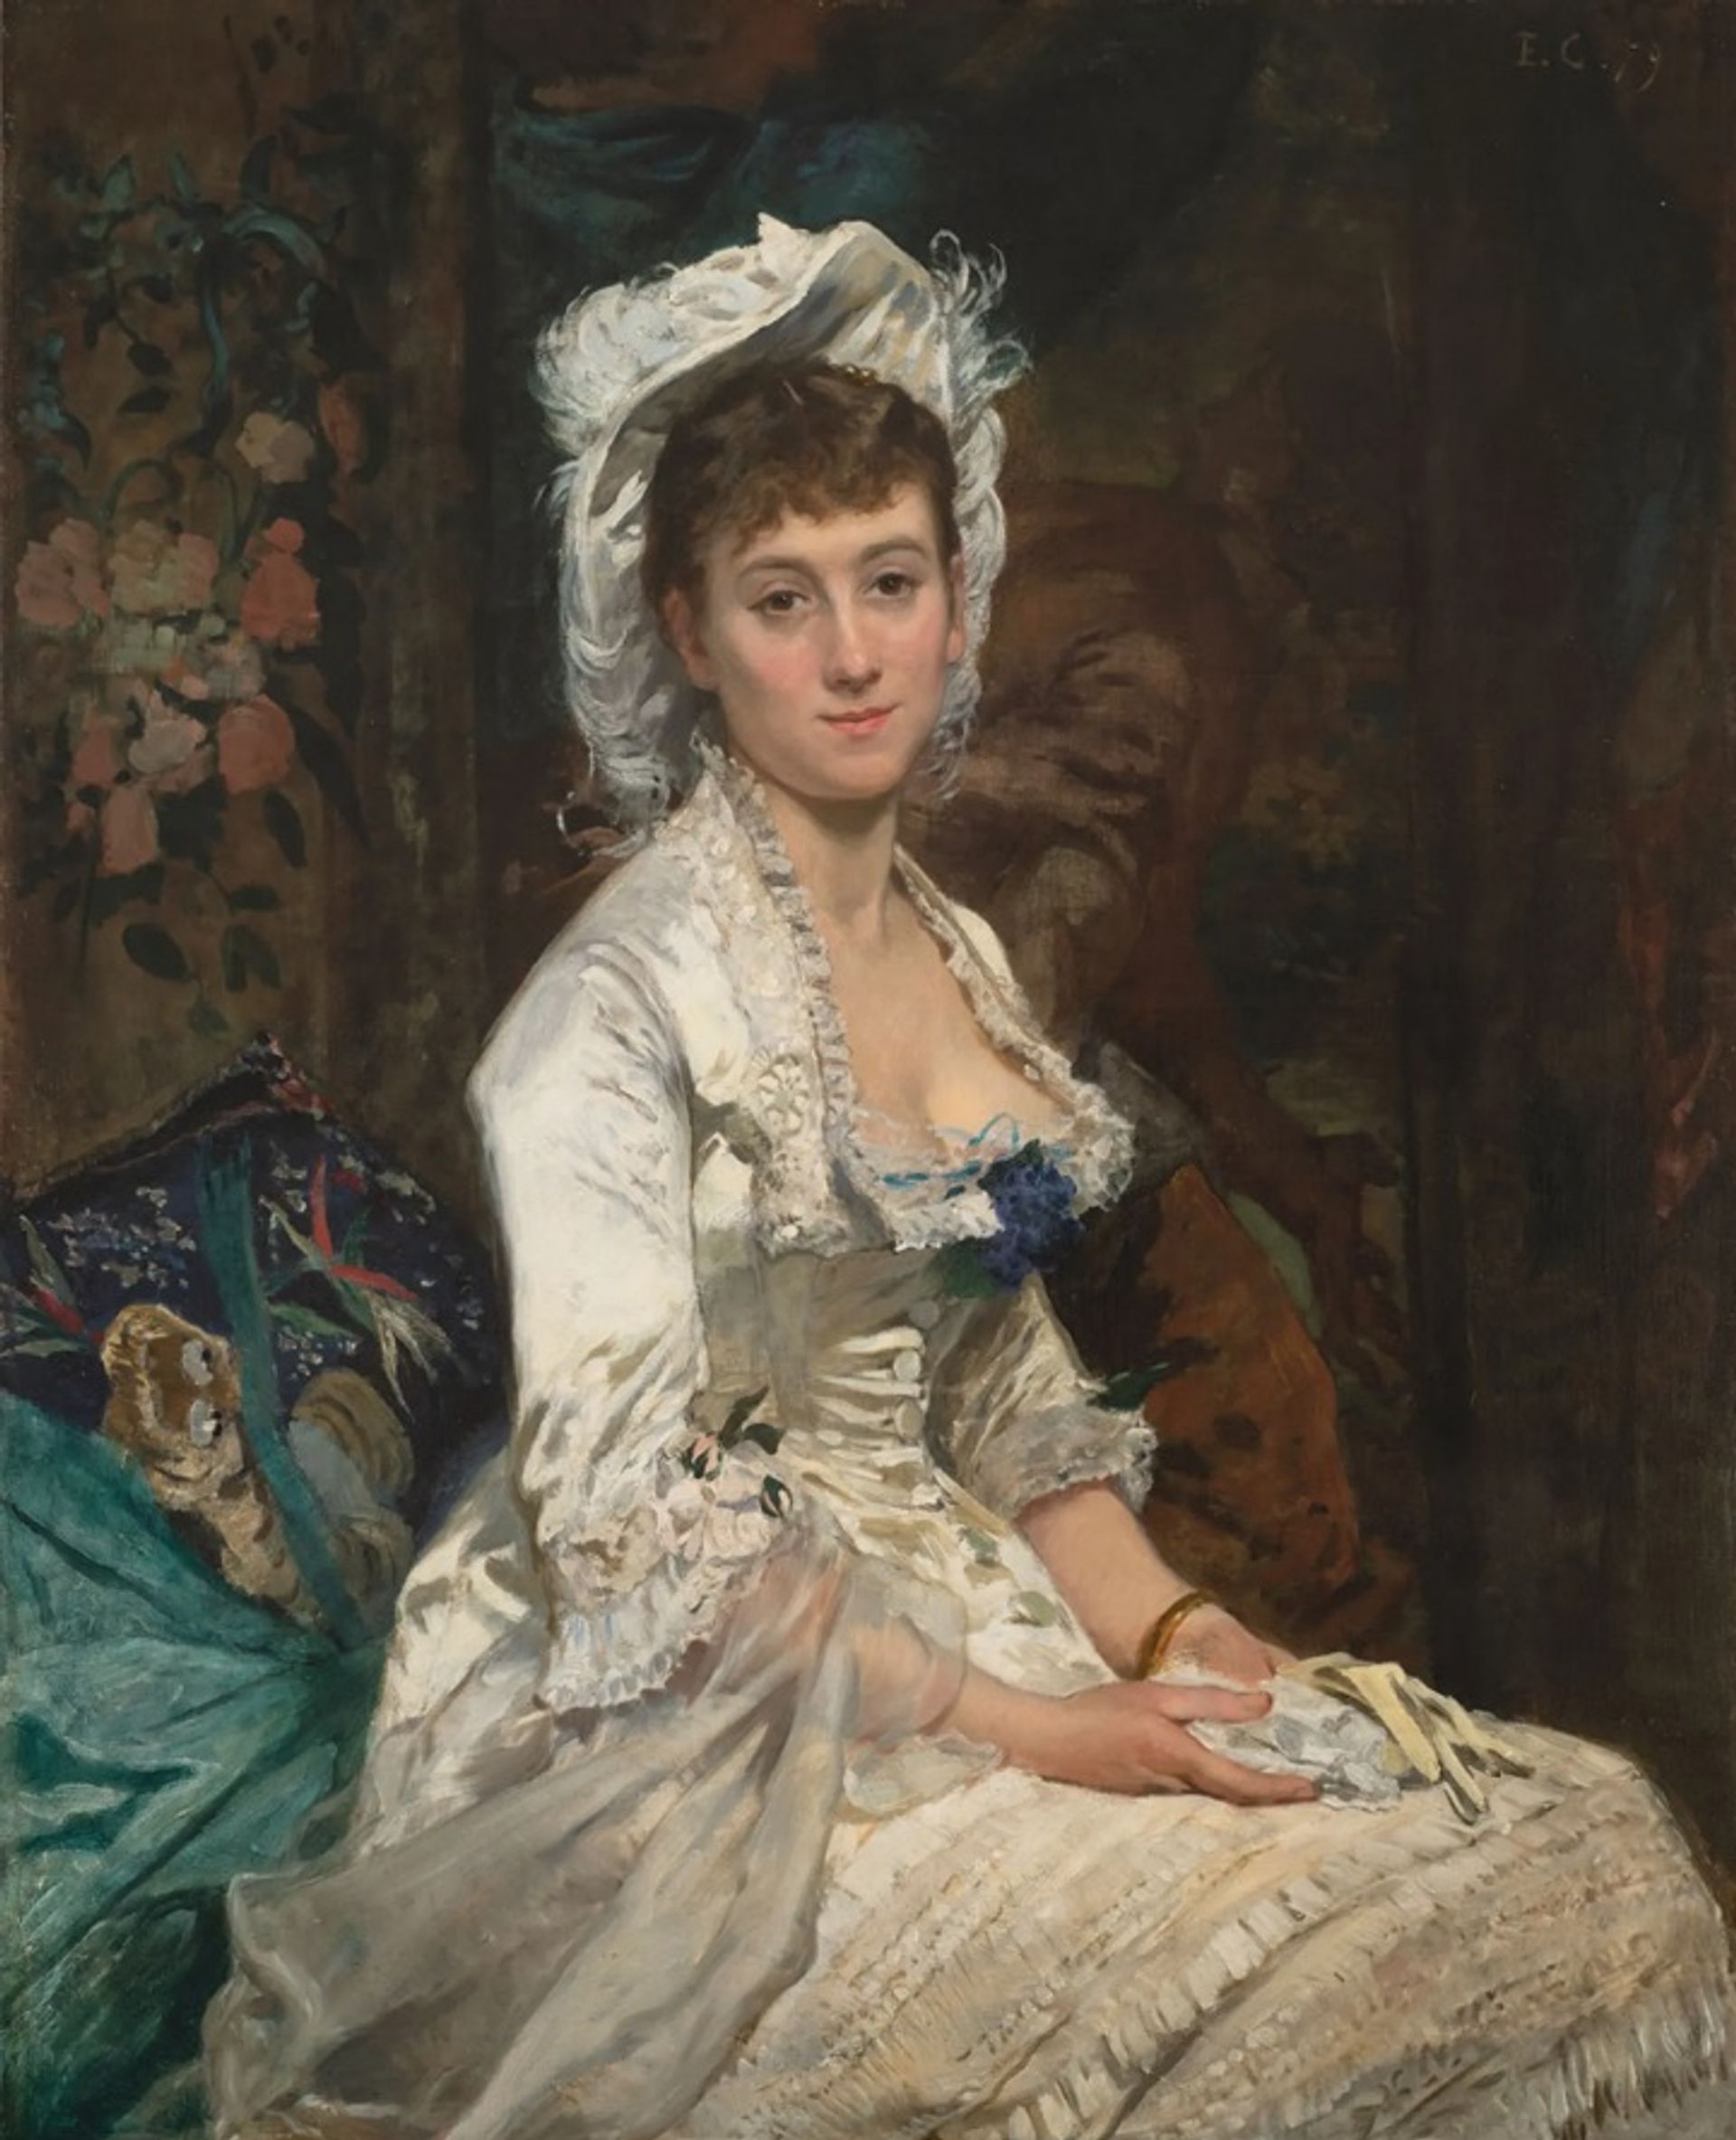 דיוקן אישה בלבן (1879)של אווה גונזלס,היא אחת היצירות שנתרמו ל"מוזיאון הלאומי לנשים באמנויות"

צילום: לי סטלסוורת'